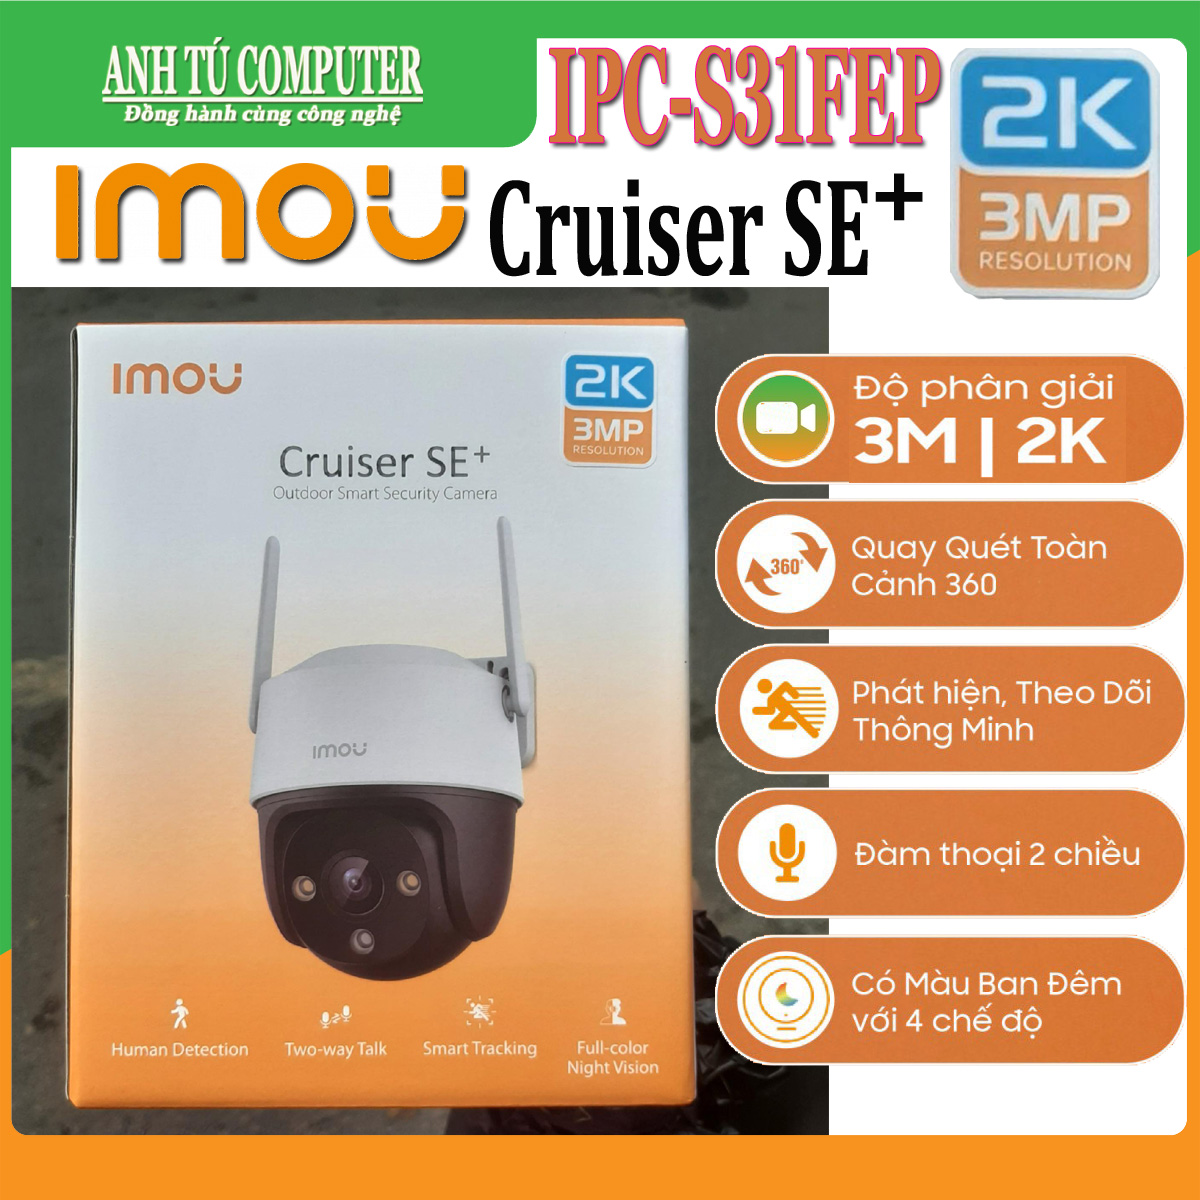 Hình ảnh Camera WIFI 3MP 2K iMOU Cruiser SE+ IPC-S31FEP Có đàm thoại hàng chính hãng